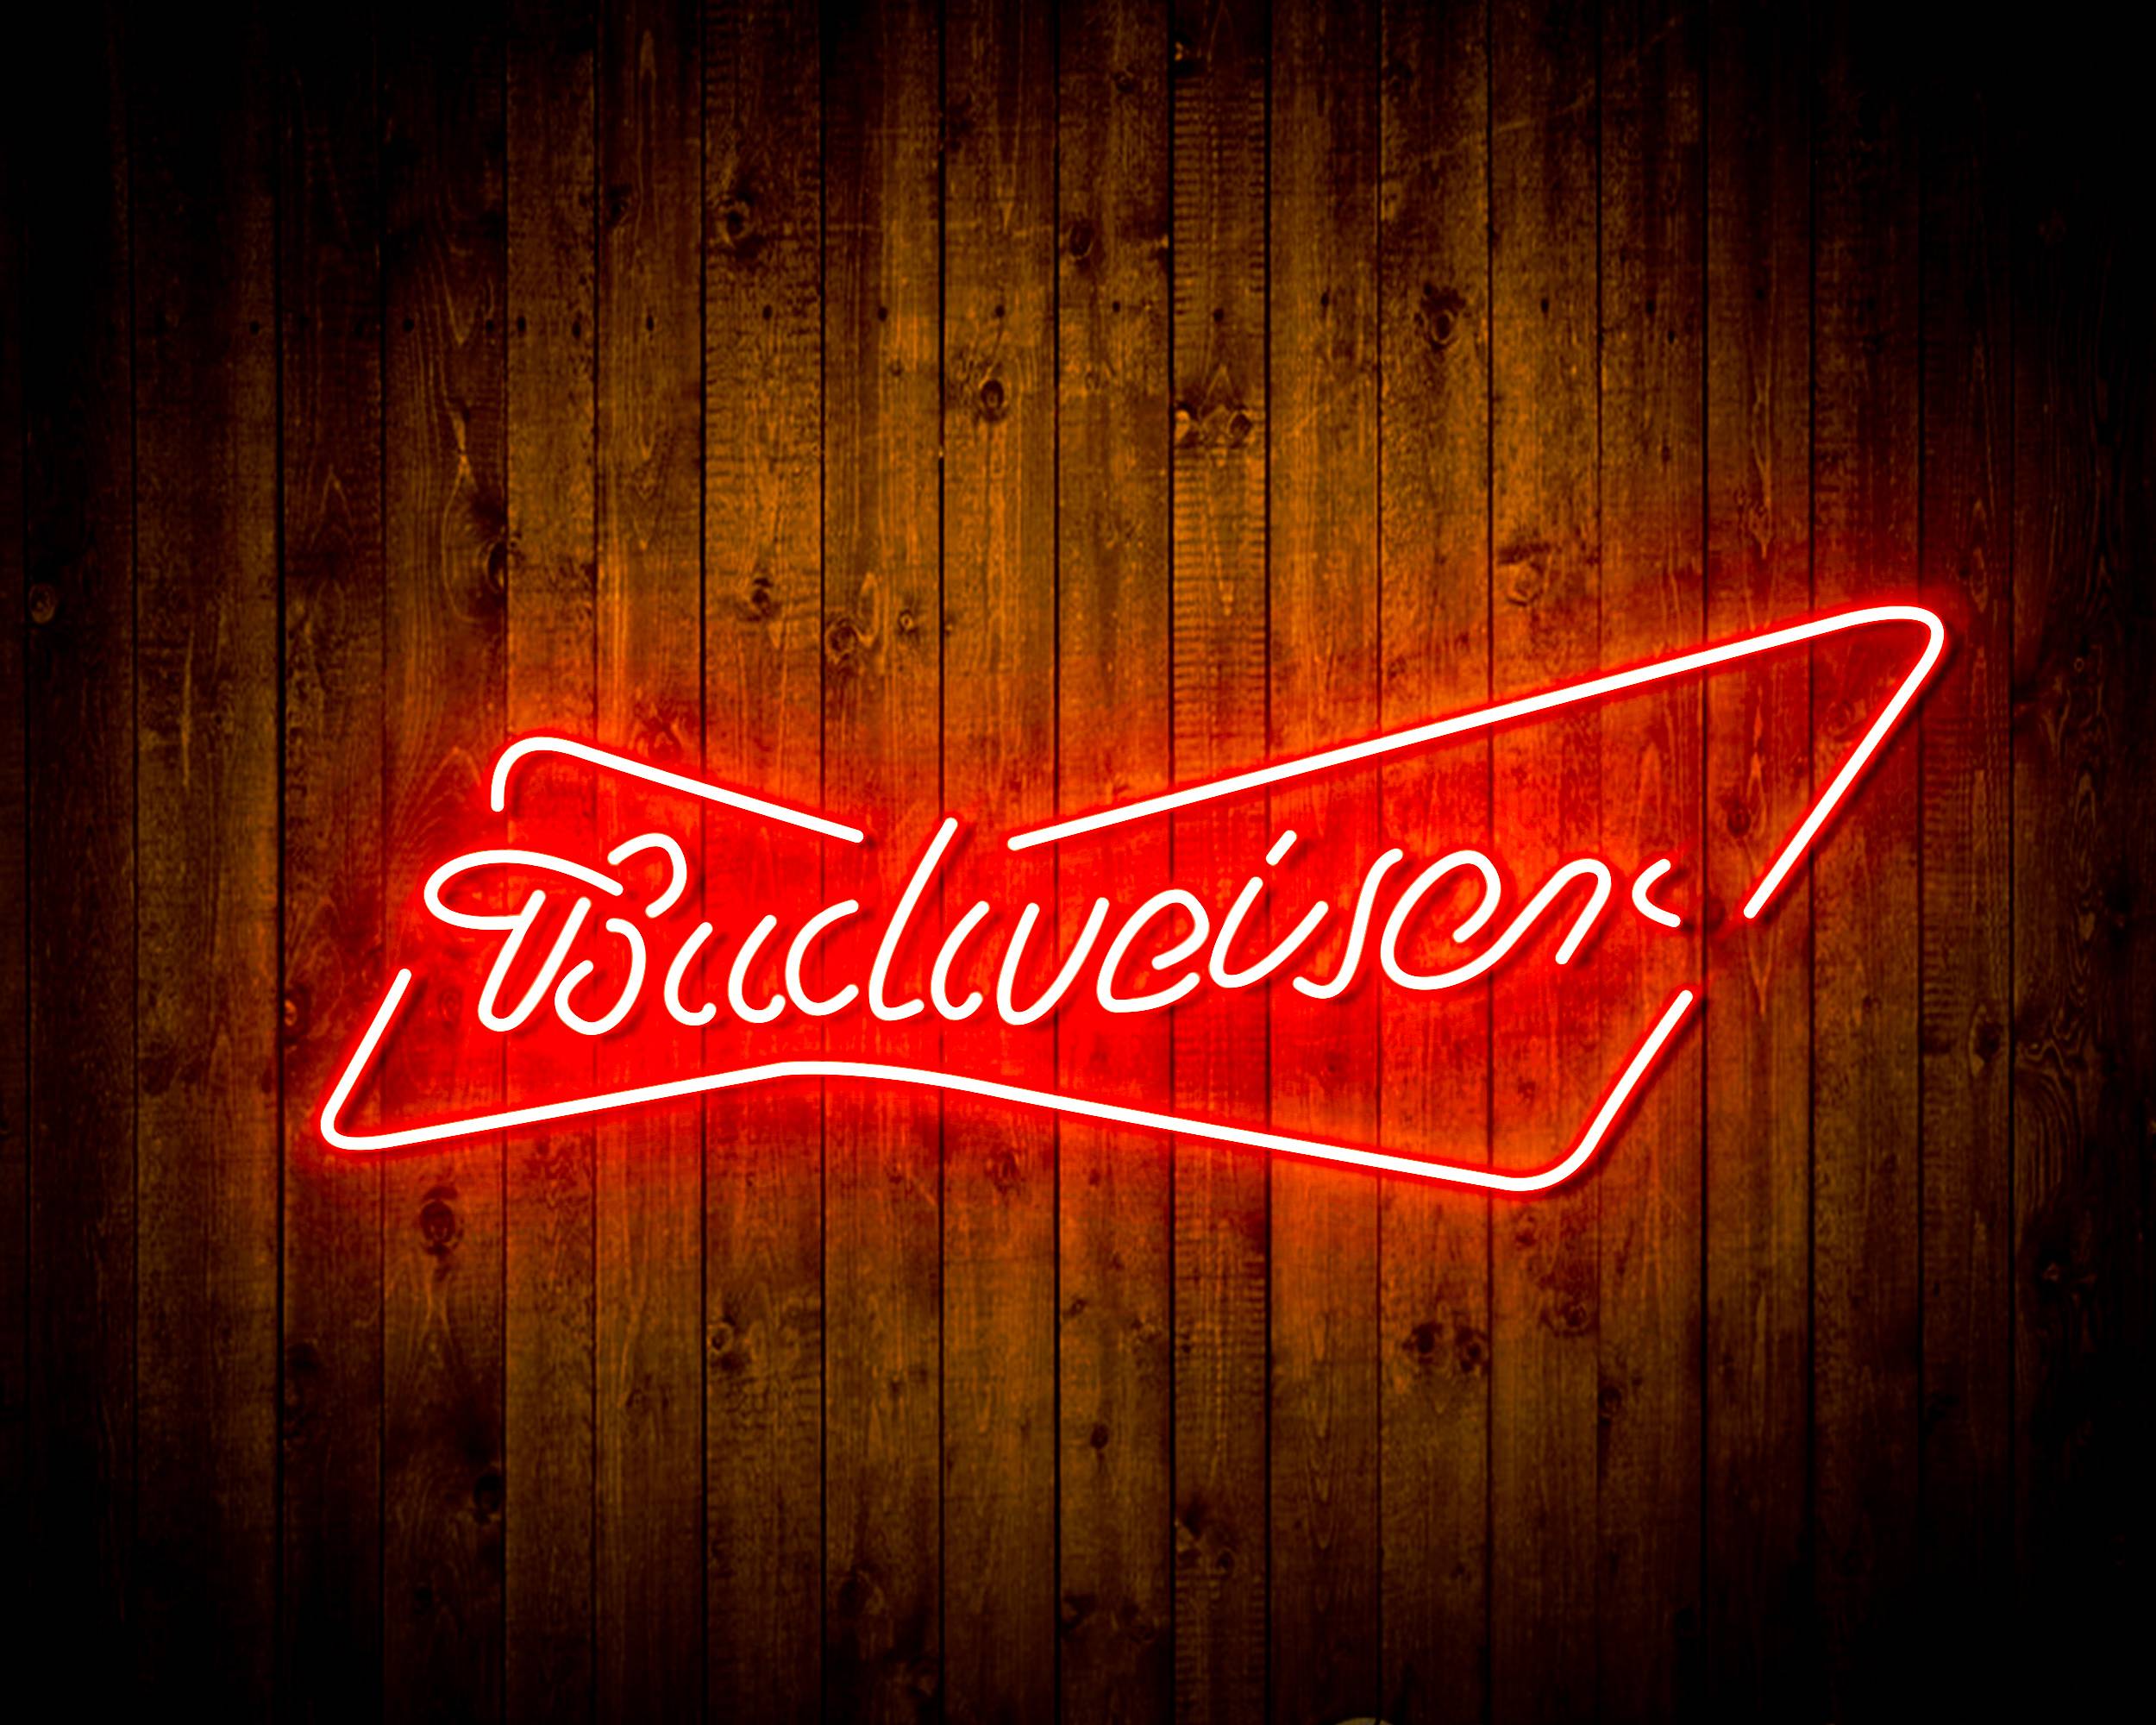 Budweiser 2 Handmade LED Neon Light Sign